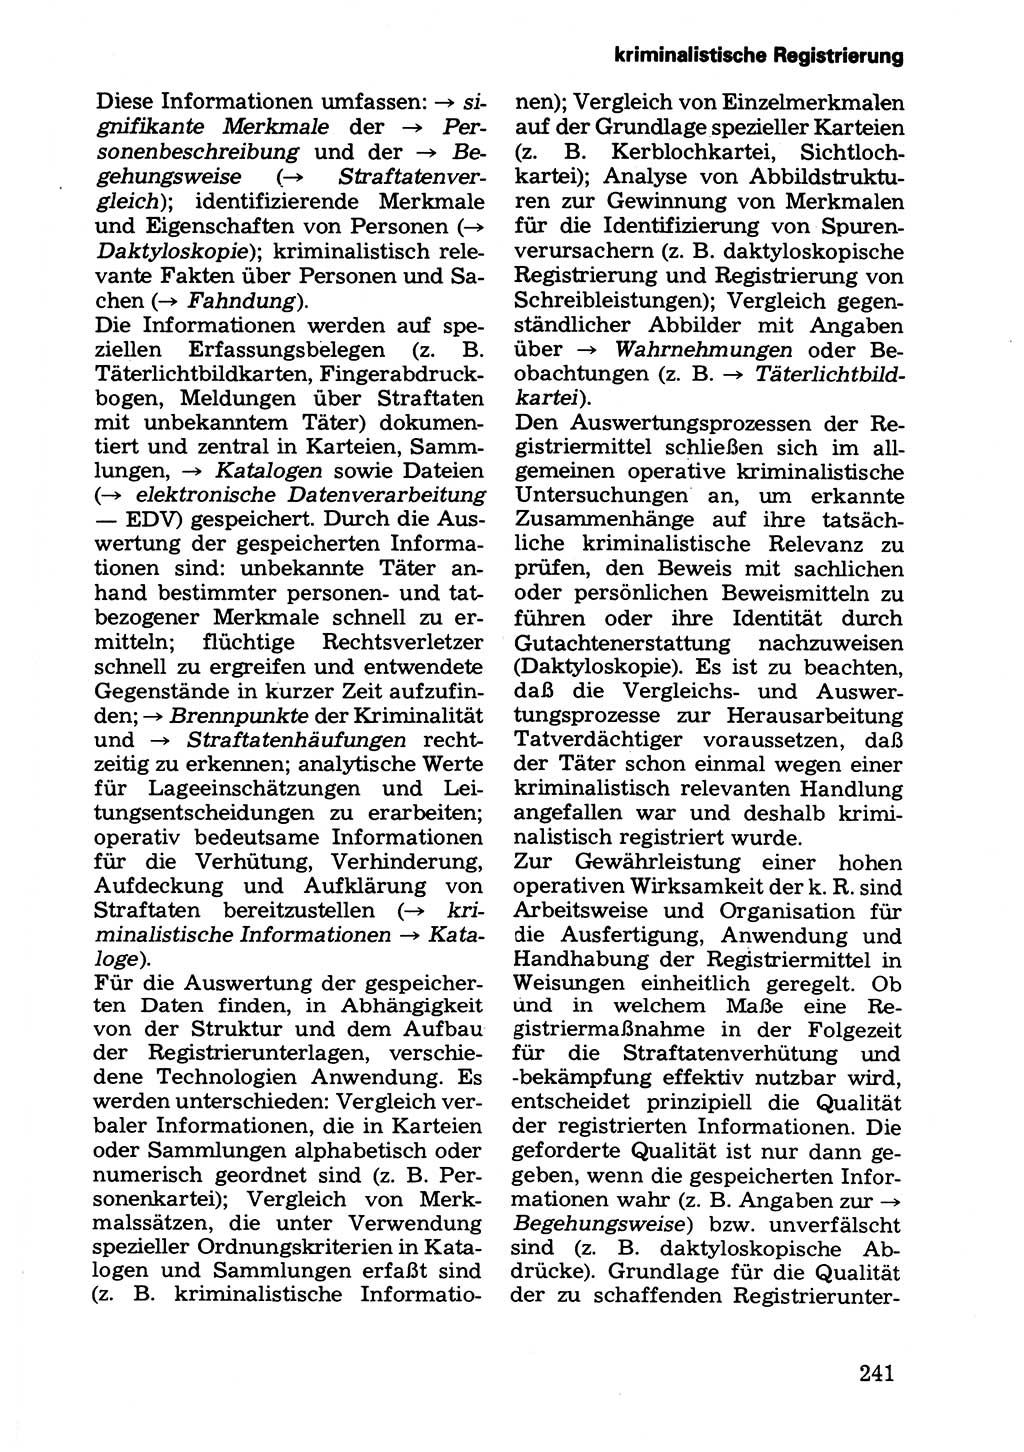 Wörterbuch der sozialistischen Kriminalistik [Deutsche Demokratische Republik (DDR)] 1981, Seite 241 (Wb. soz. Krim. DDR 1981, S. 241)